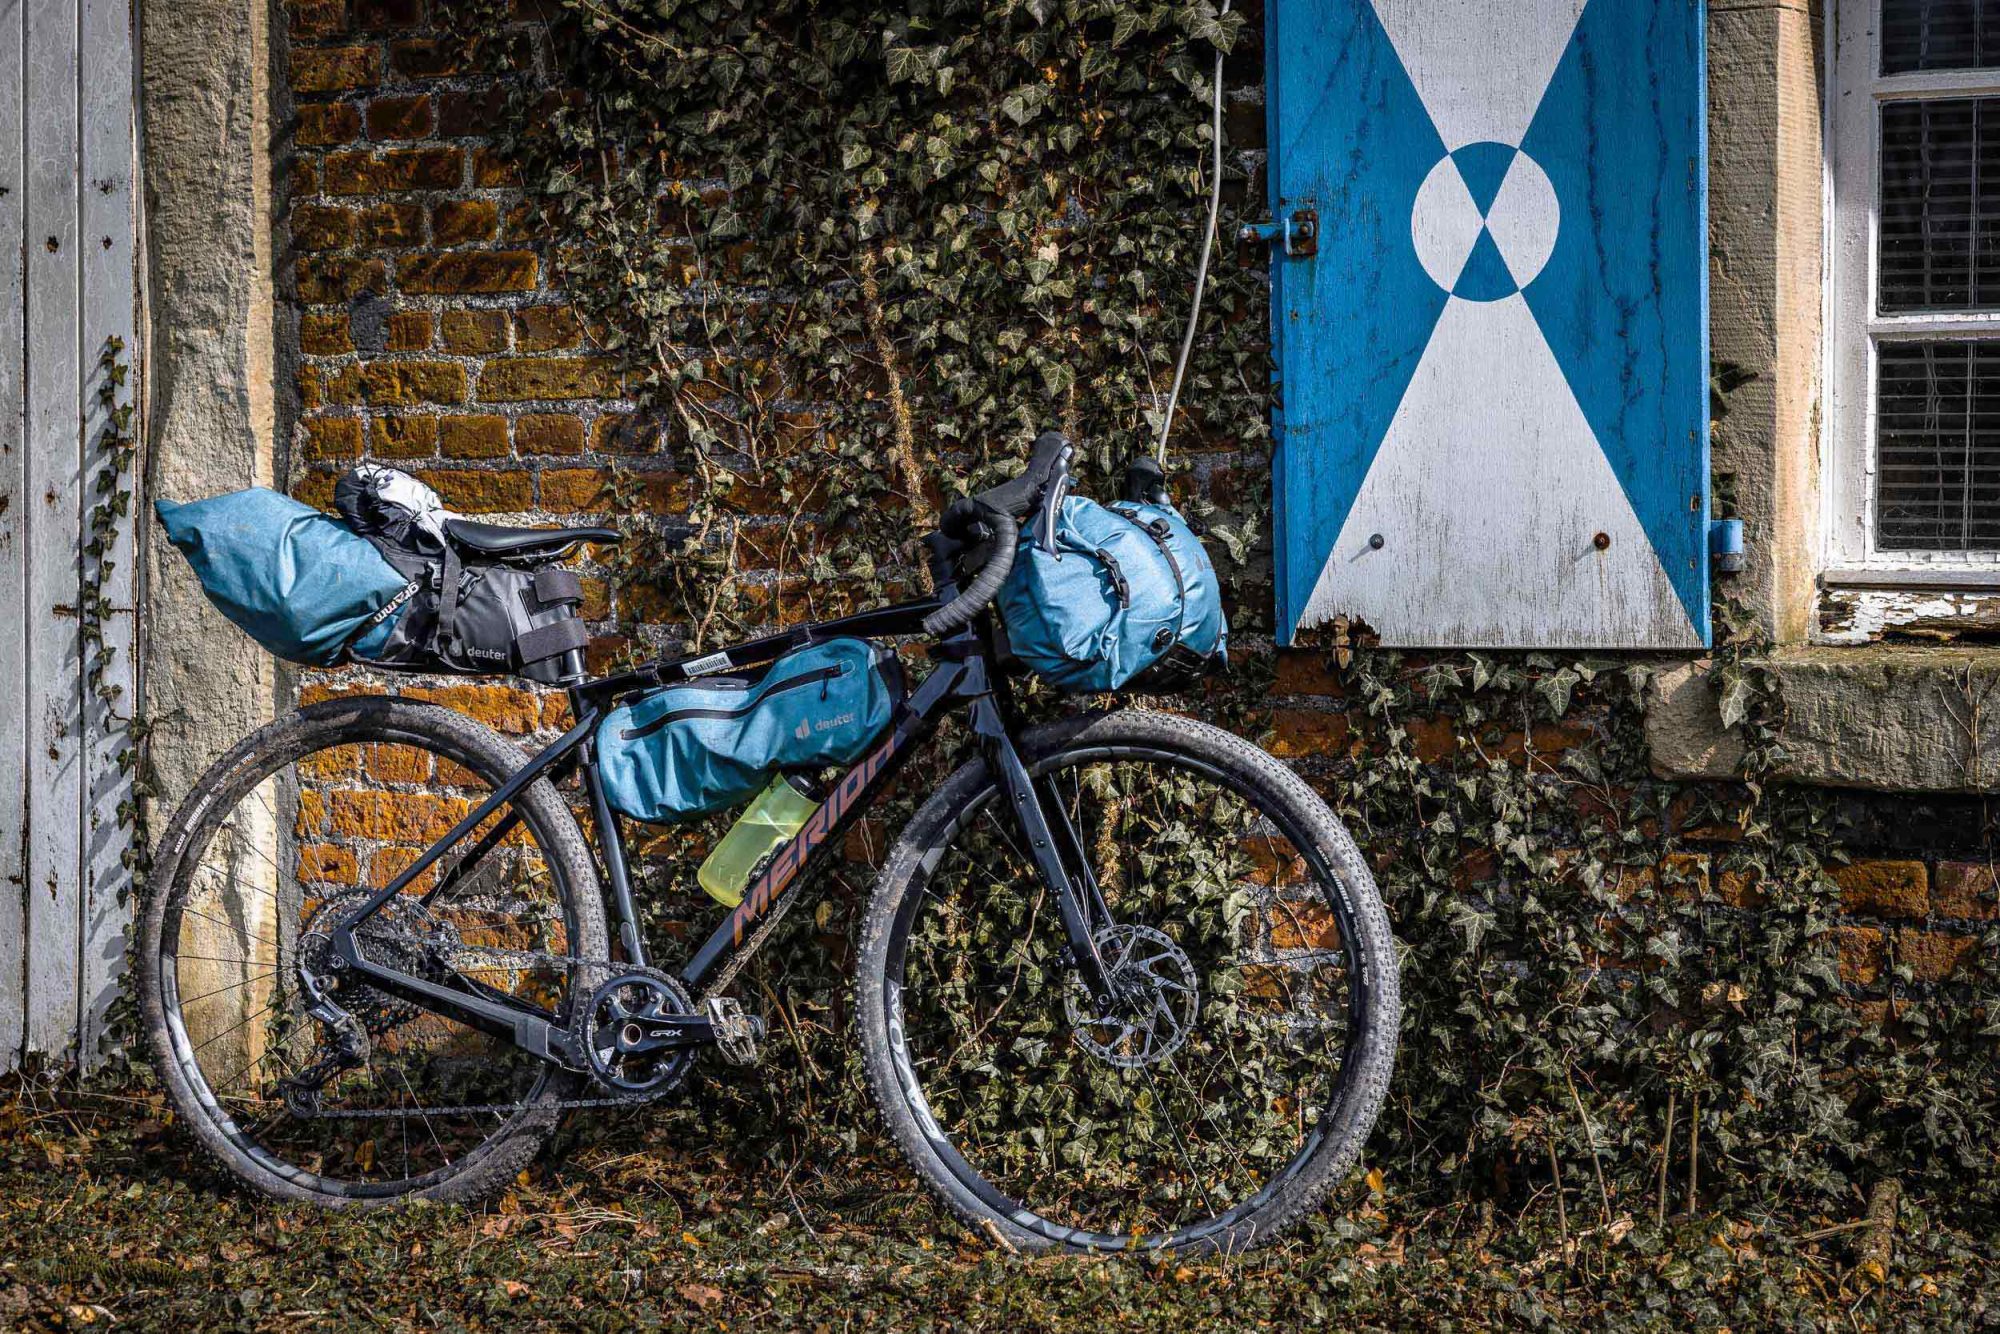 Martins bikepacking set-up für unseren merida silex 2024 test: ganz klassisch mit lenkerrolle, satteltasche und rahmentasche. Trotz des recht kompakten m-rahmens passte es insgesamt gut.